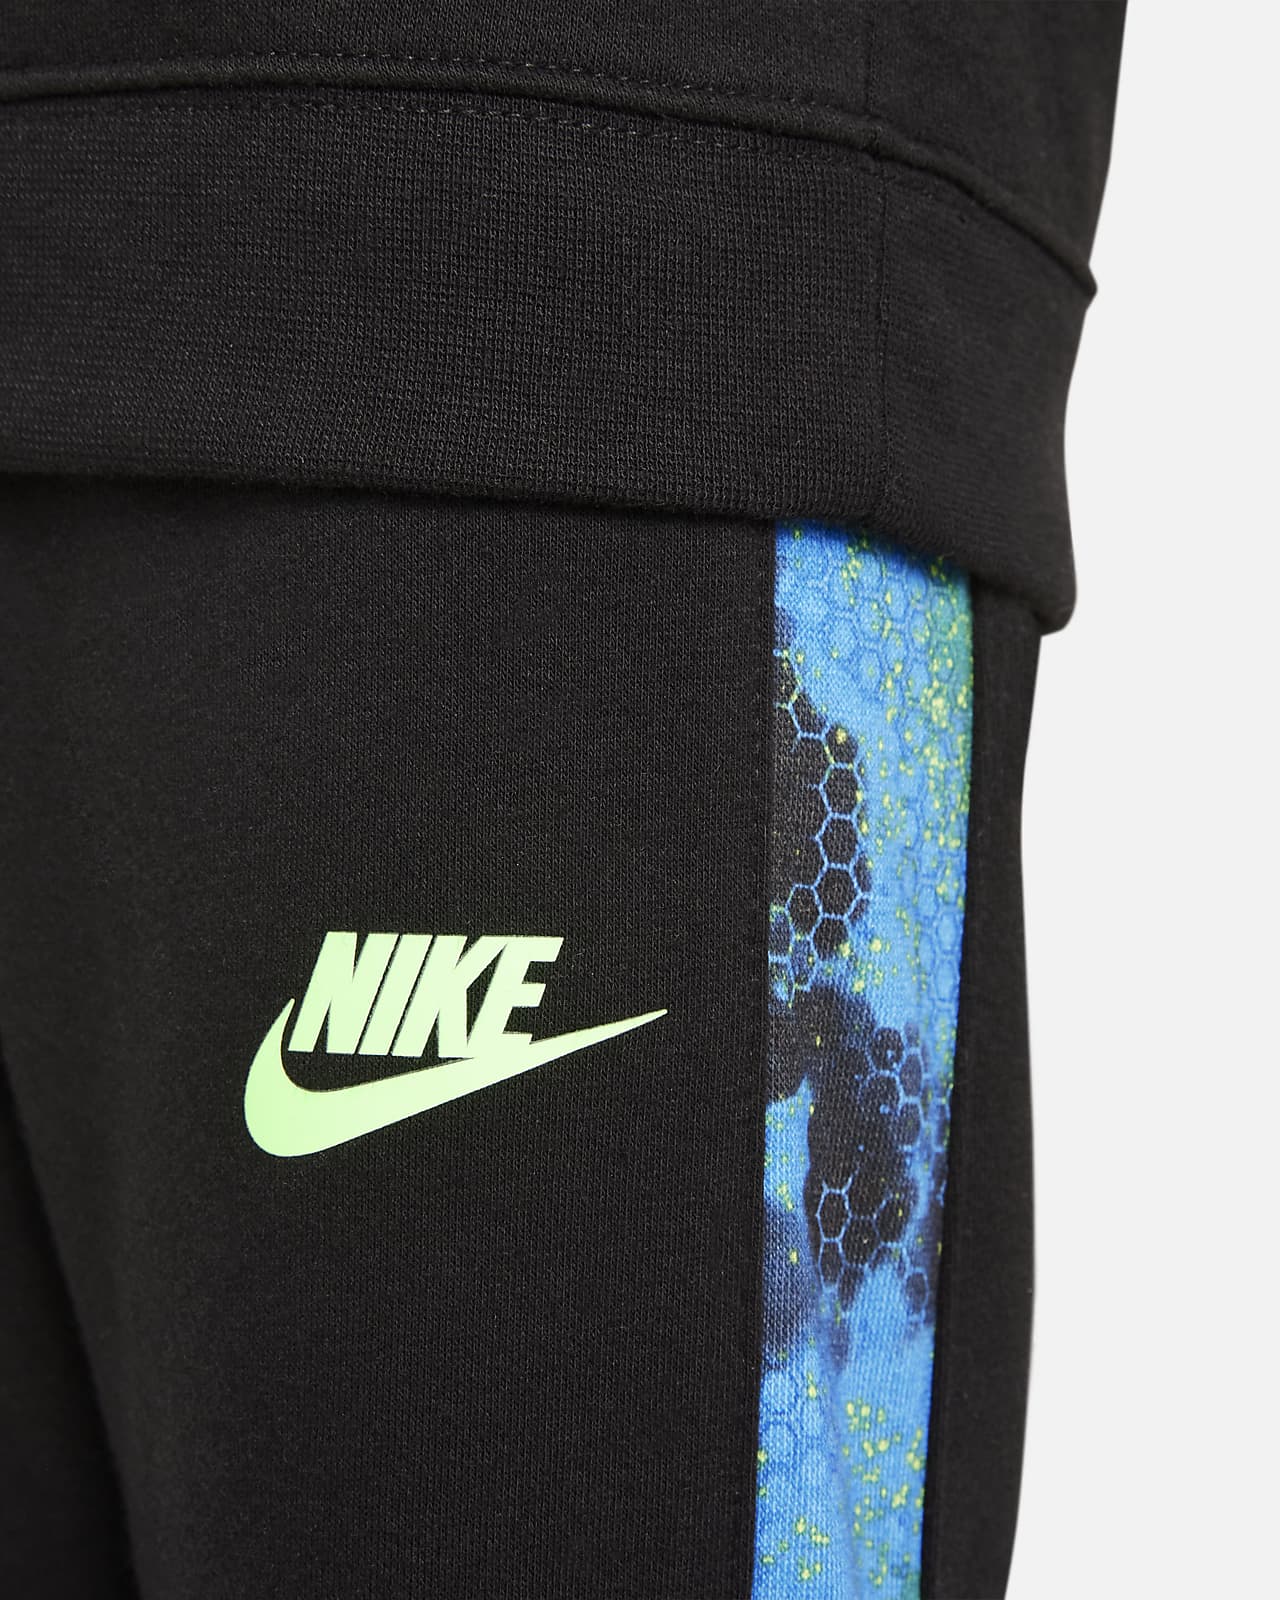 Nike Toddler Sweatshirt and Pants Set.